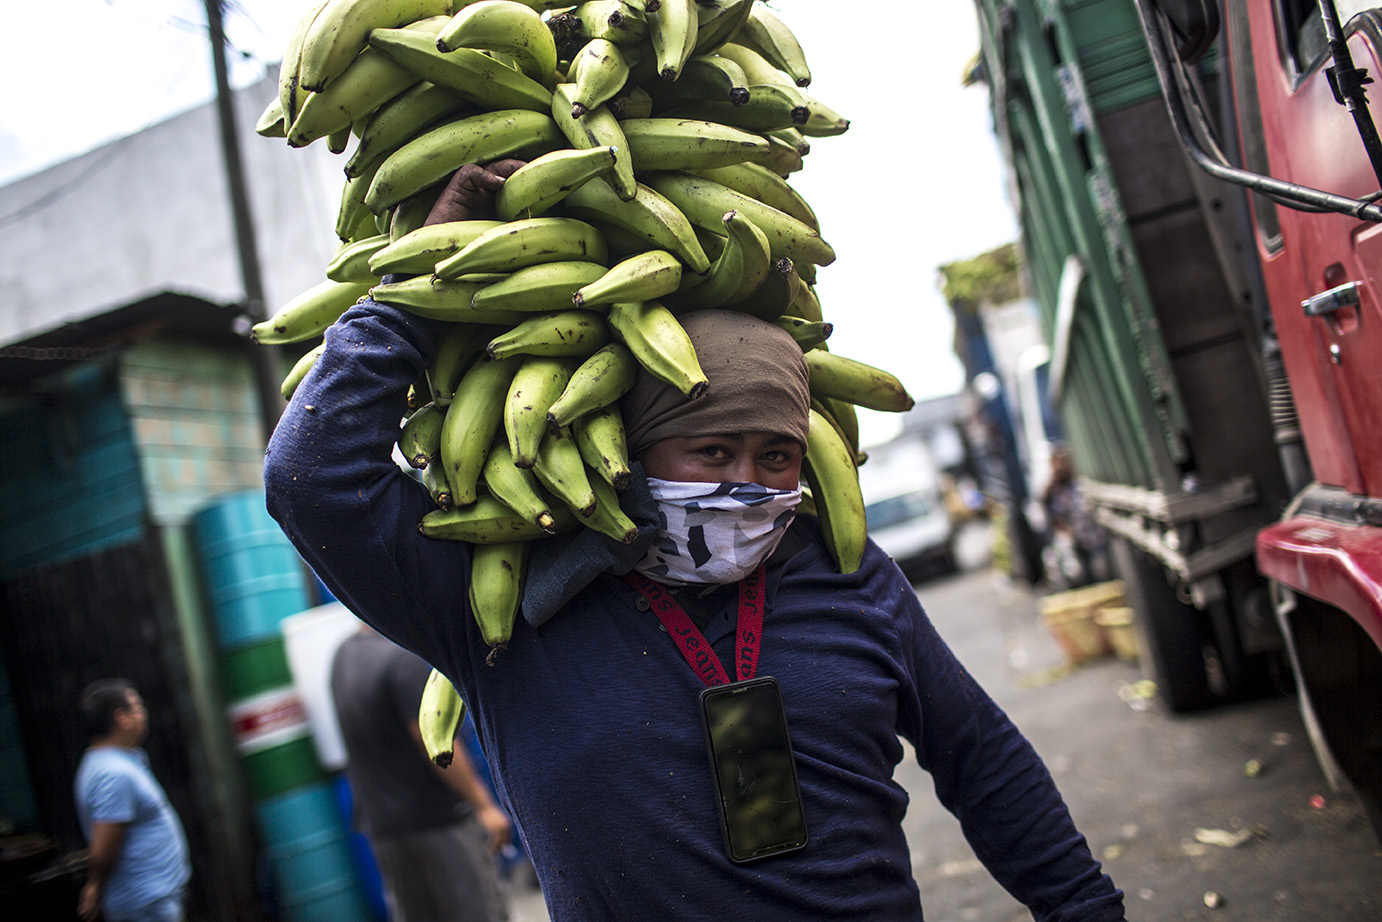 Ronald Quintero, 30, carga plátanos en la platanera del mercado de la Terminal, el miércoles 18. No puede dejar de trabajar y sigue ganando 1 quetzal por cada carga de plátanos transportada. Simone Dalmasso